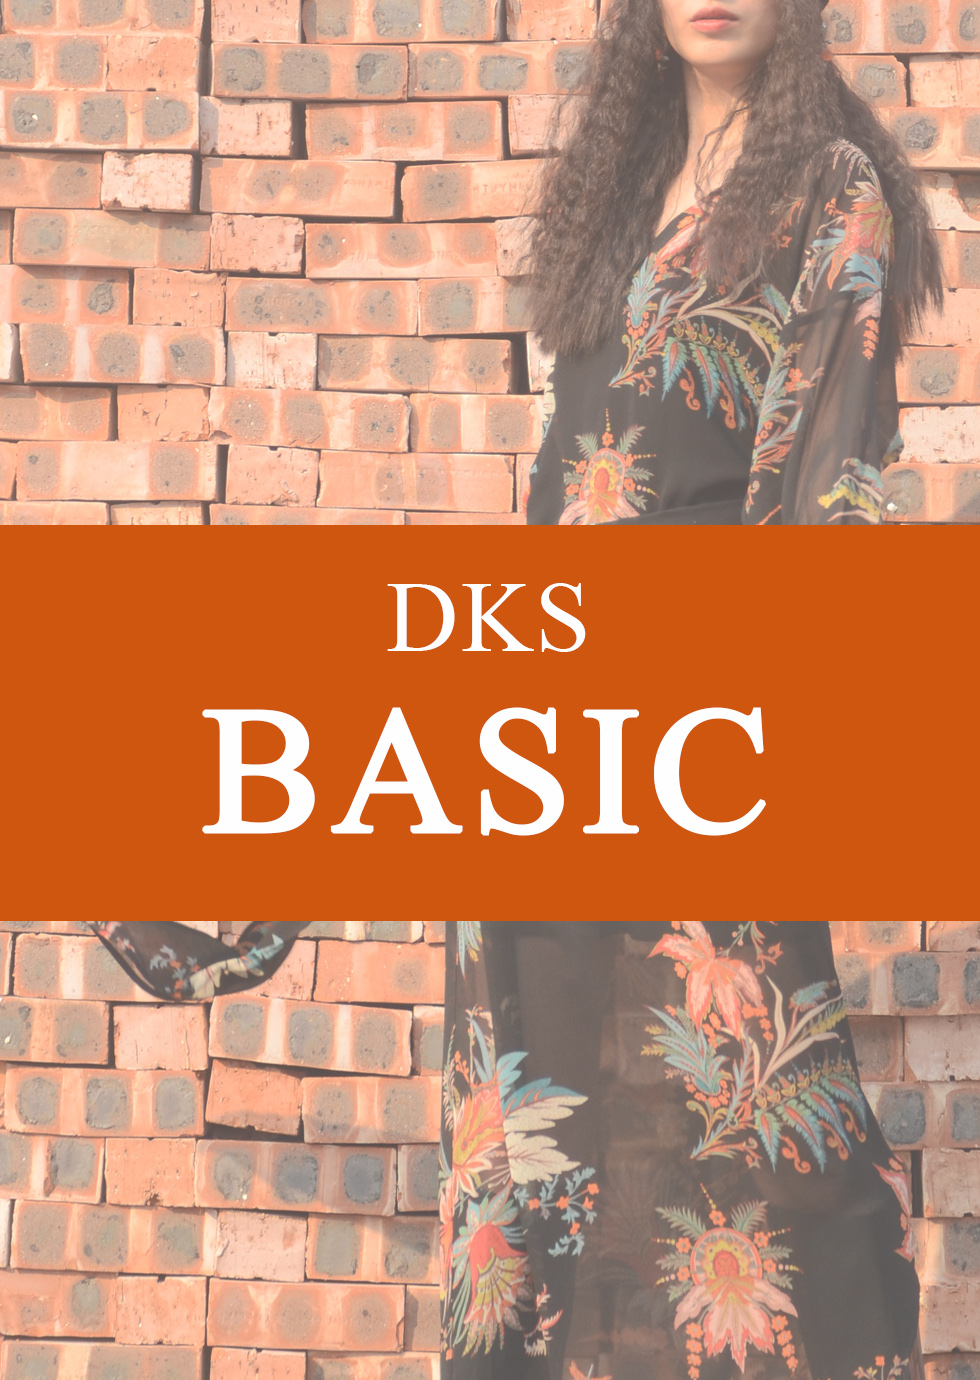 DKS Basic